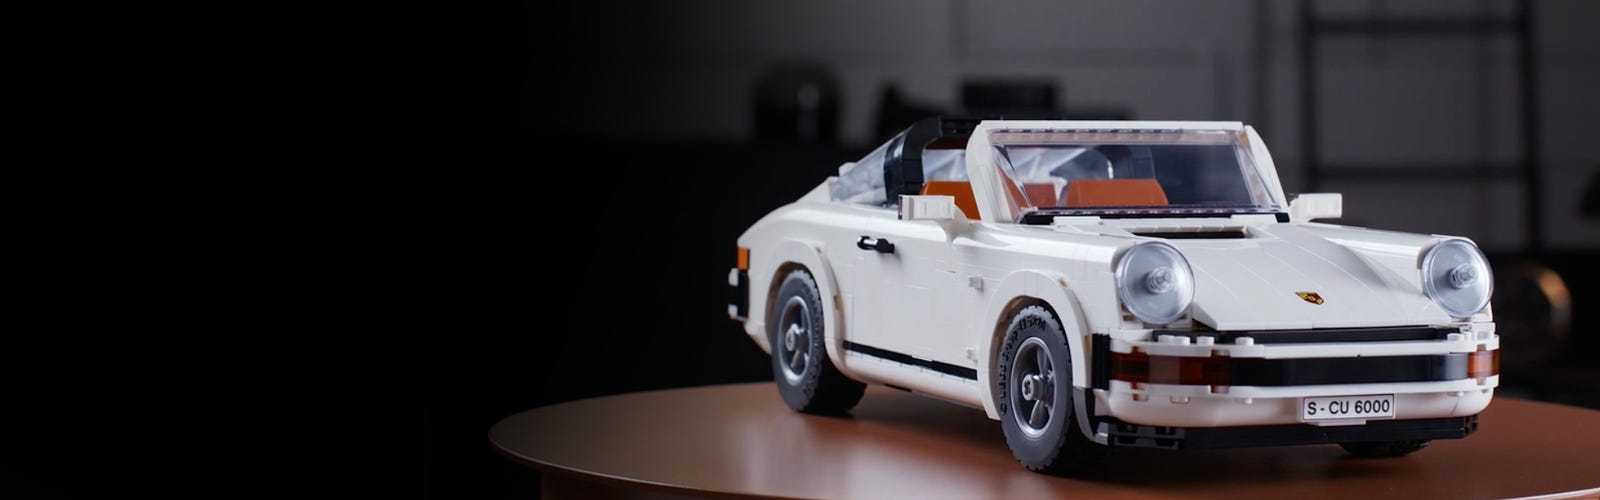 LEGO MOC Creator 10295 RWB Porsche 911 Mod by SirManperson